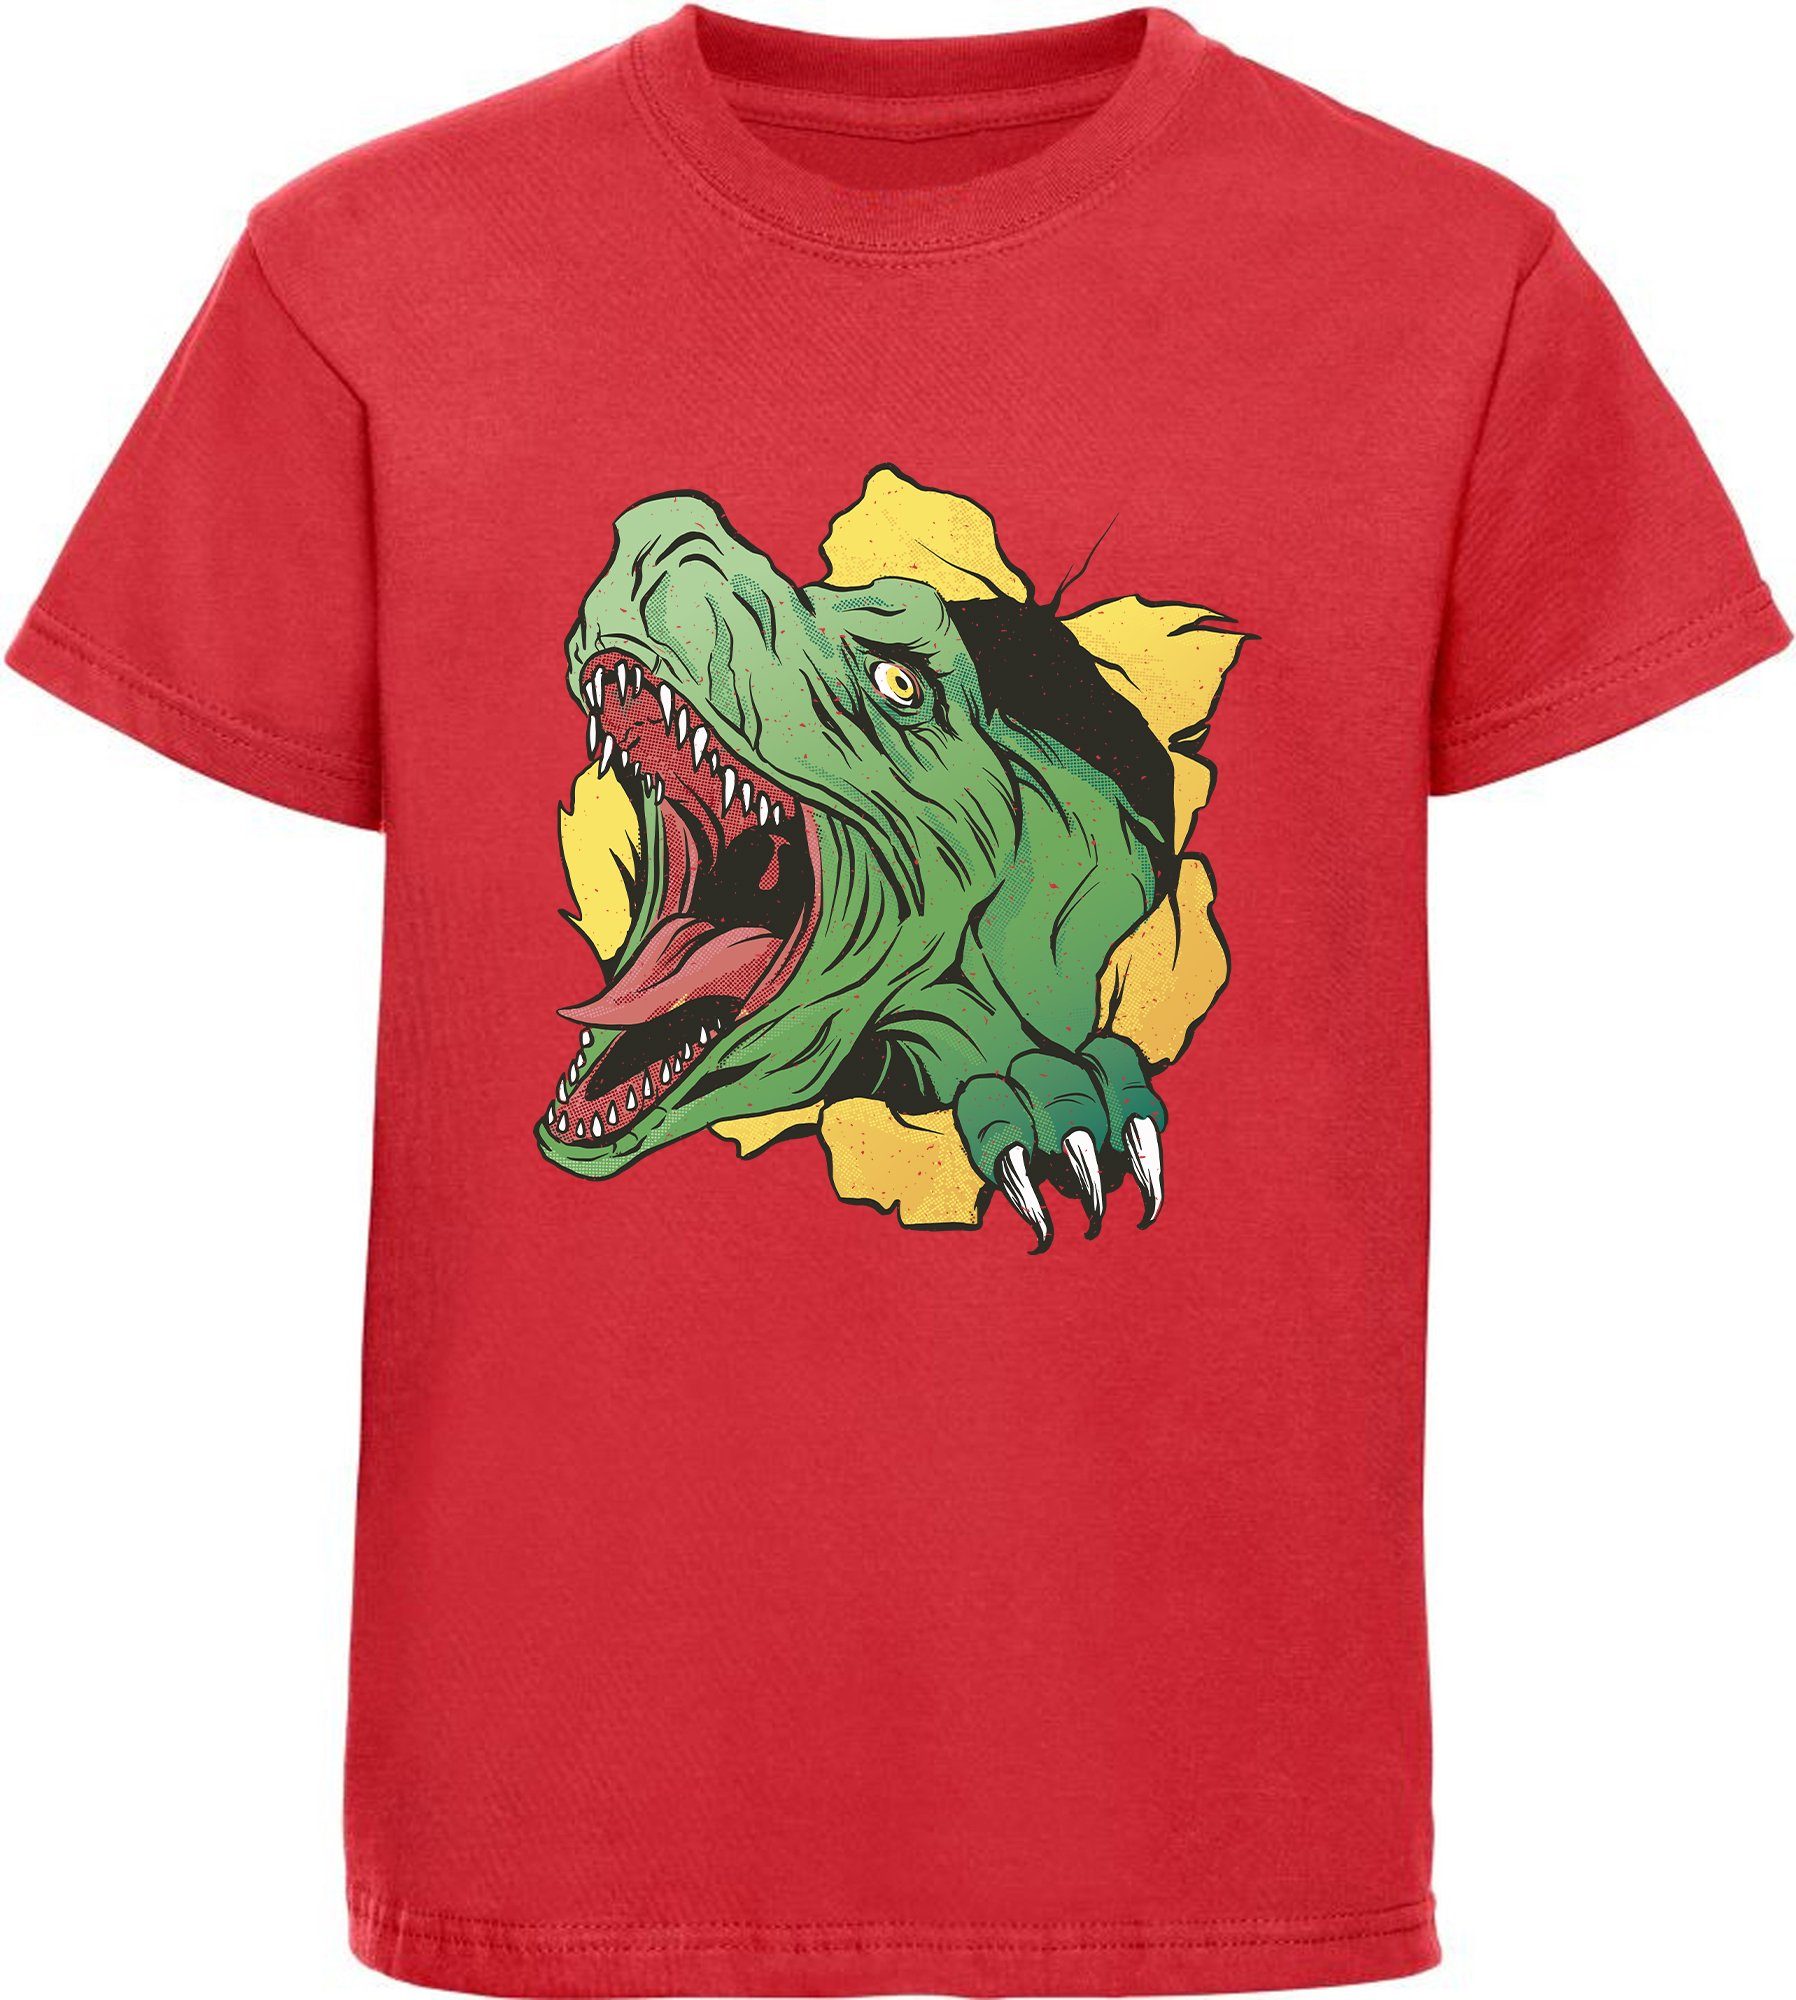 MyDesign24 Print-Shirt T-Rex i68 mit schwarz, Kopf bedrucktes weiß, blau, T-Shirt mit Baumwollshirt Dino, Kinder rot